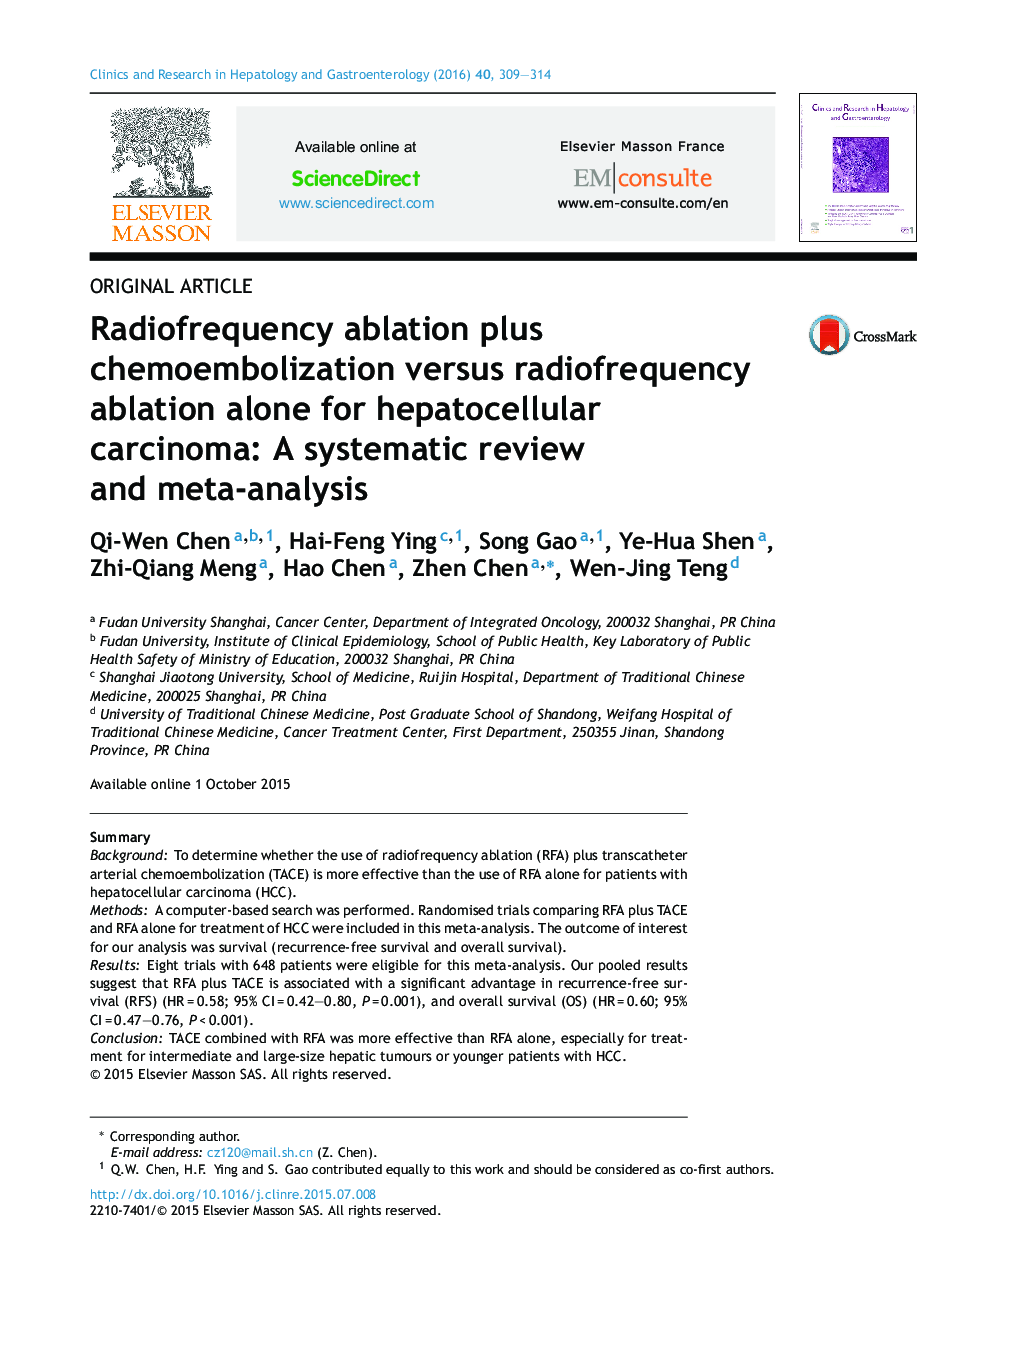 تخریب رادیوفرکانسی به همراه کموامبولیزاسیون در برابر تخریب رادیوفرکانس تنها برای کارسینوم هپاتوسلولار: بررسی سیستماتیک و متاآنالیز